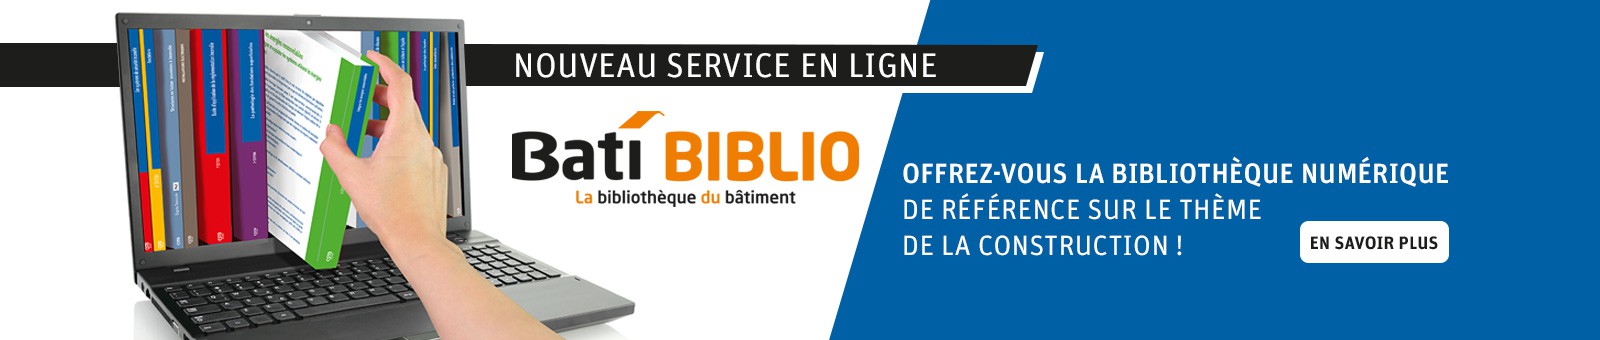 Nouveau Service en ligne BatiI BIBLIO